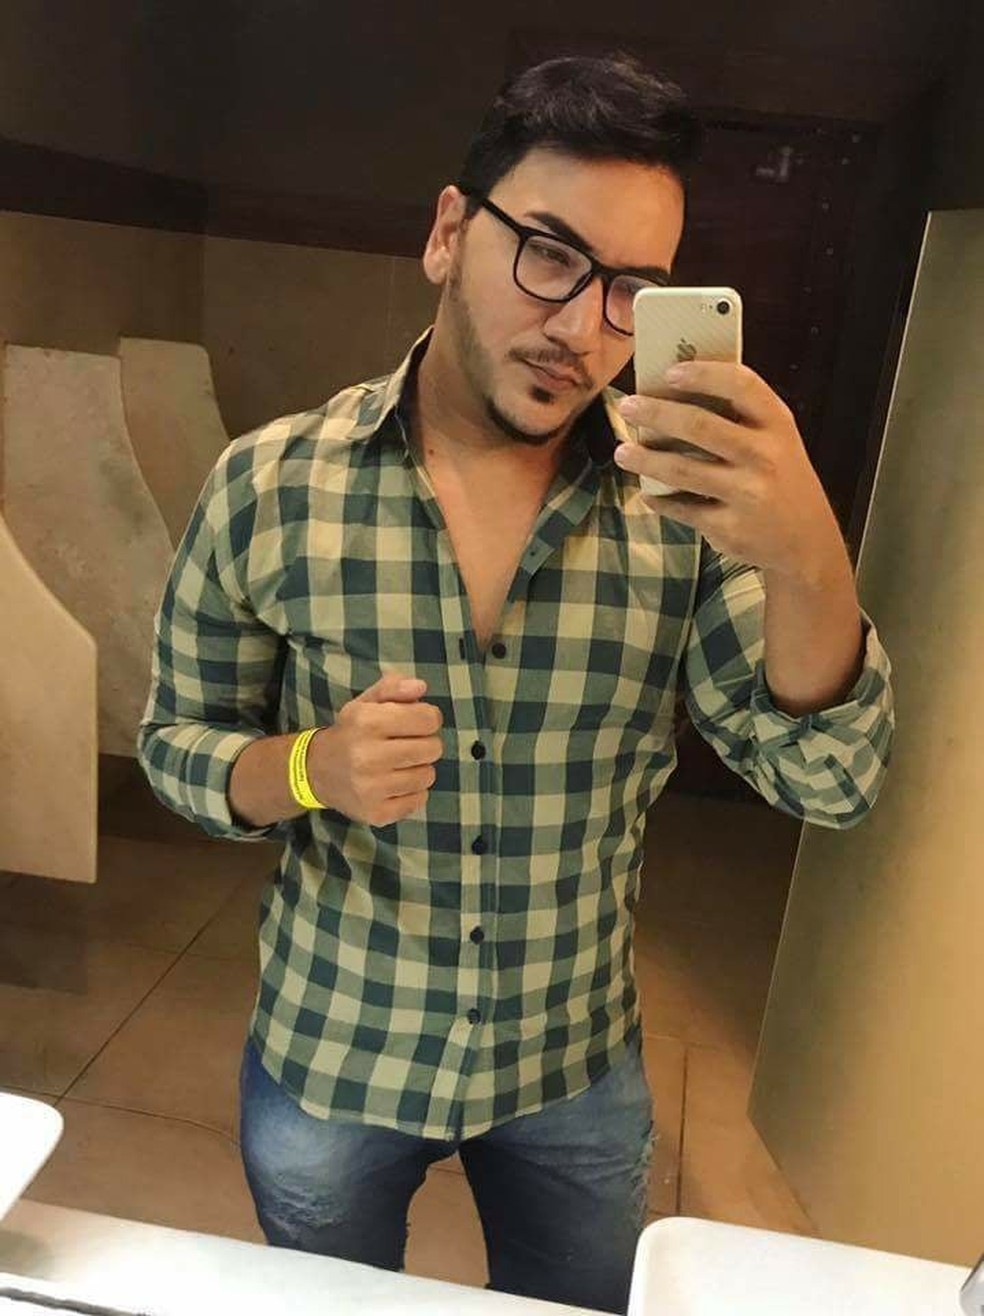 O estilista José Laerte da Silva, de 28 anos, foi baleado na cabeça durante viagem em aplicativo de transporte de passageiros em Natal  (Foto: Arquivo pessoal)